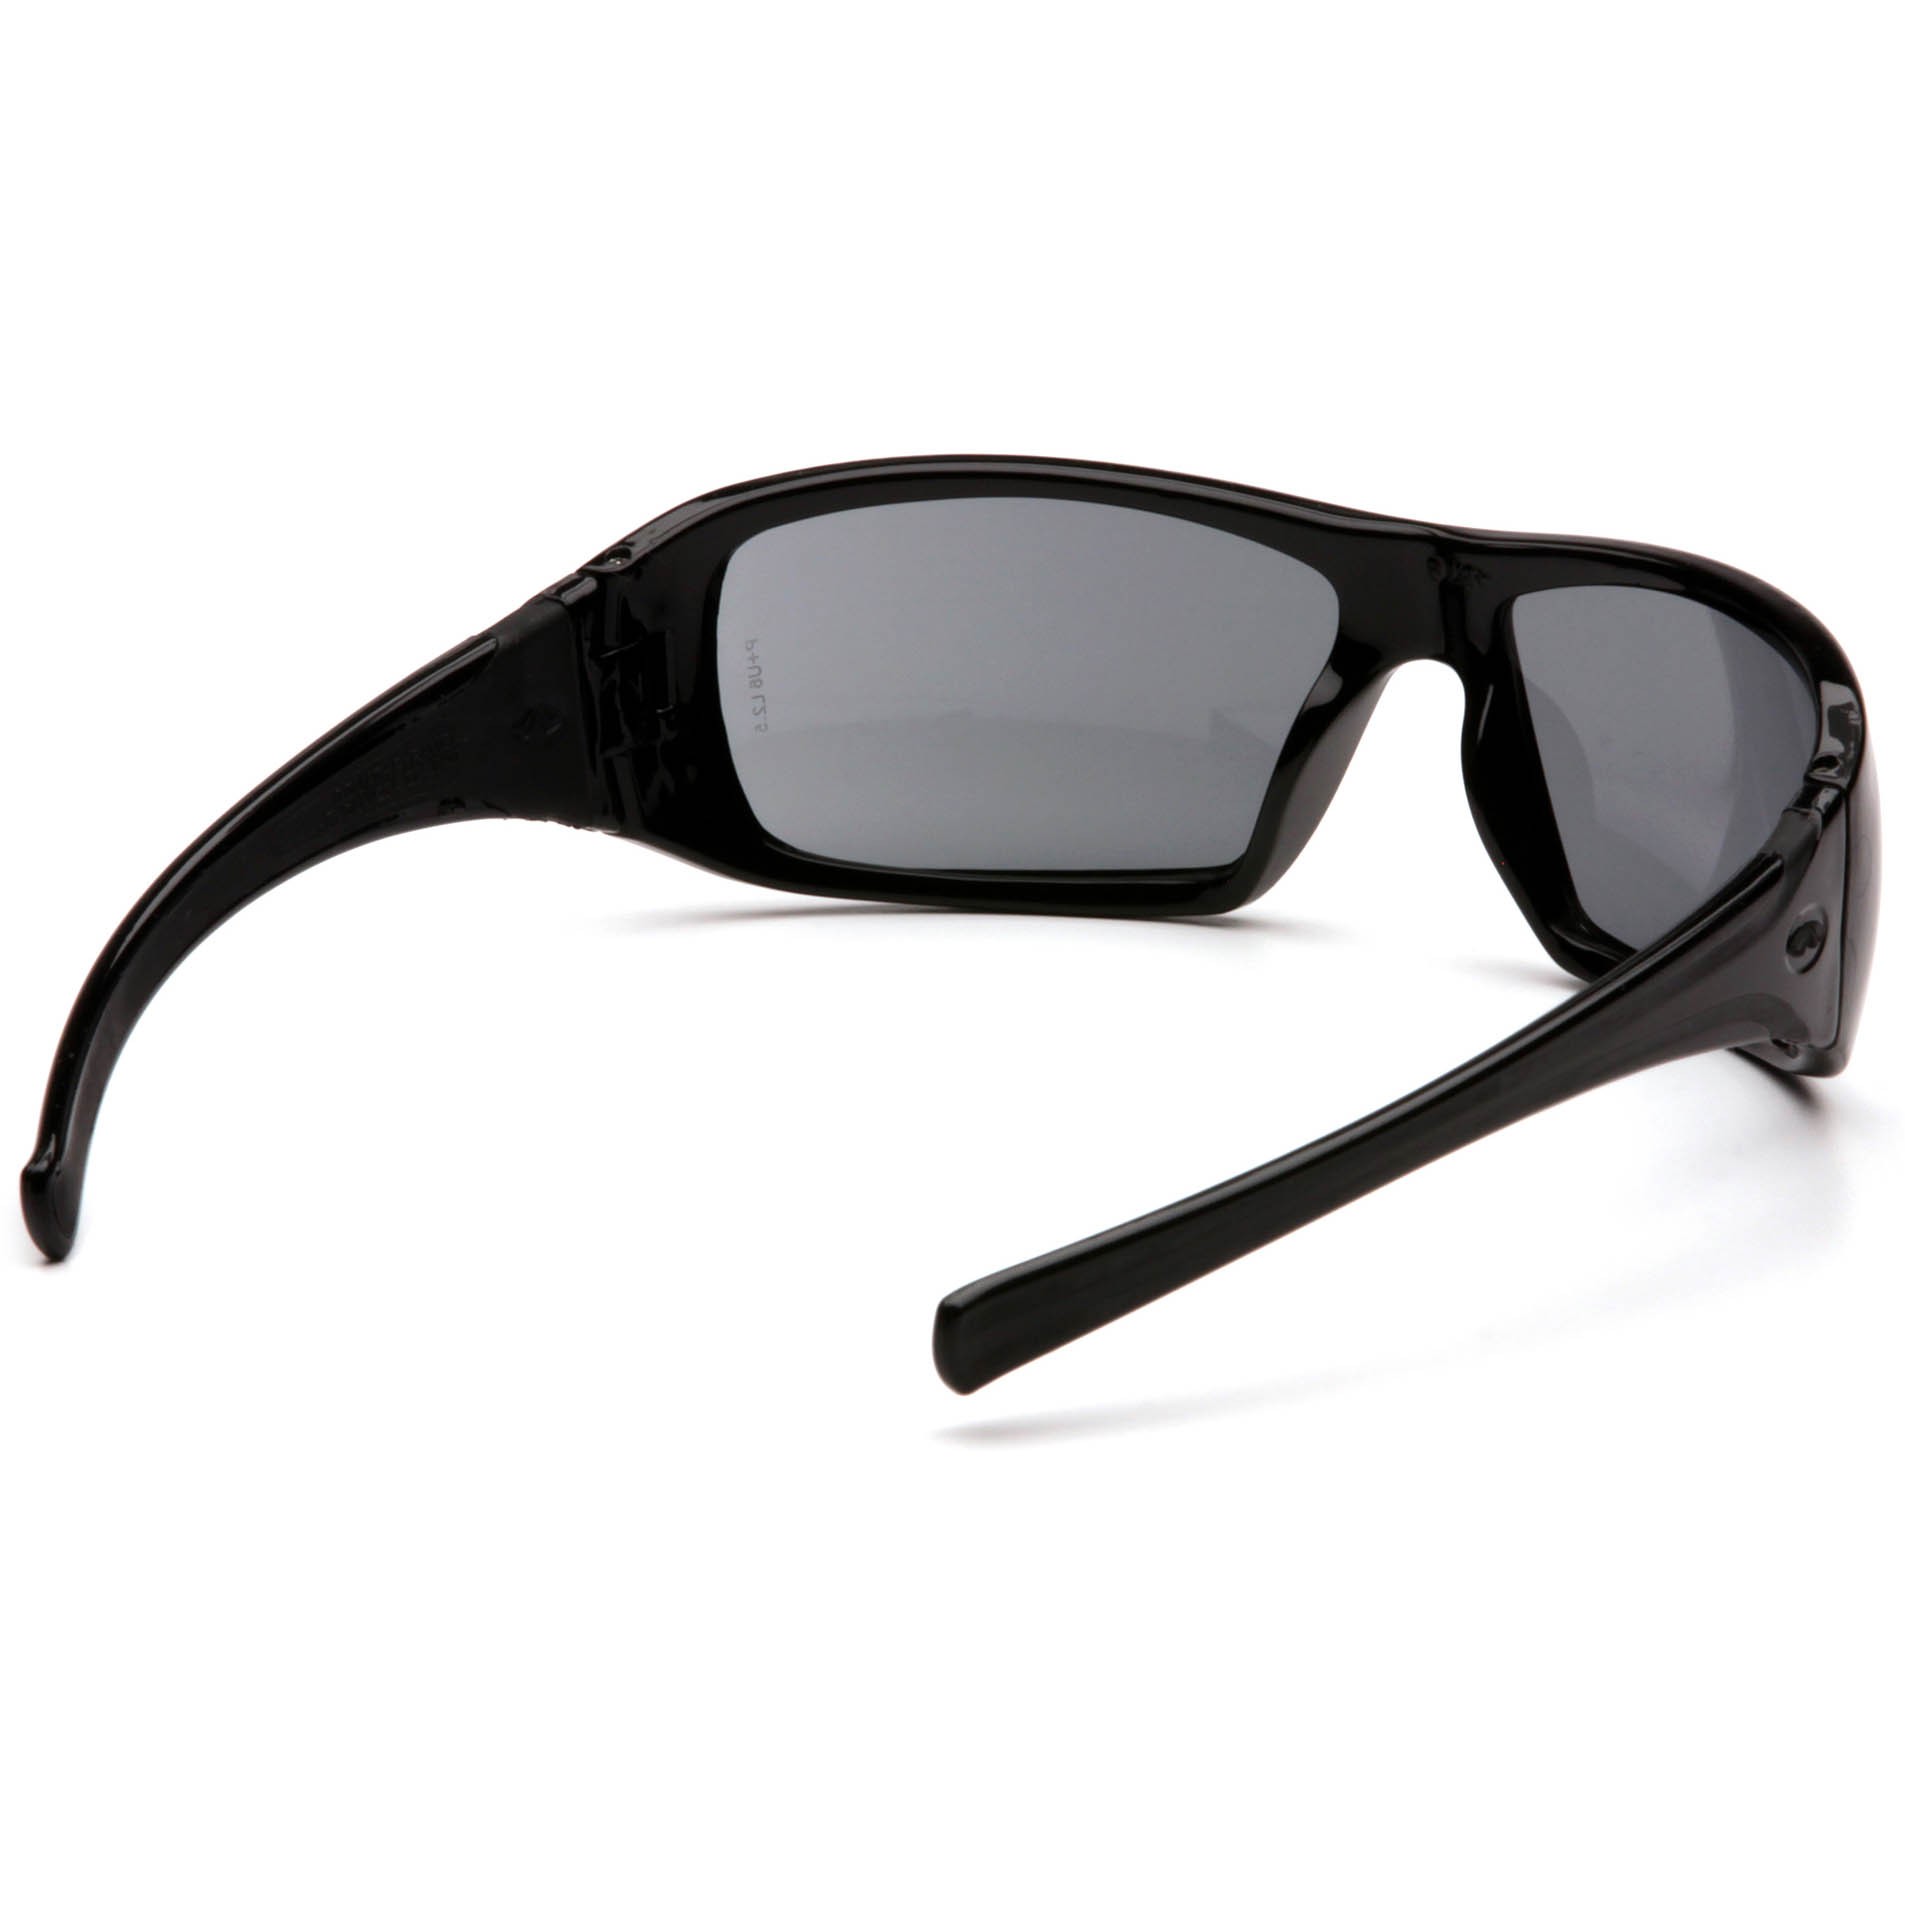 Pyramex SB5620D Goliath Safety Glasses - Black Frame - Gray Lens | Full ...